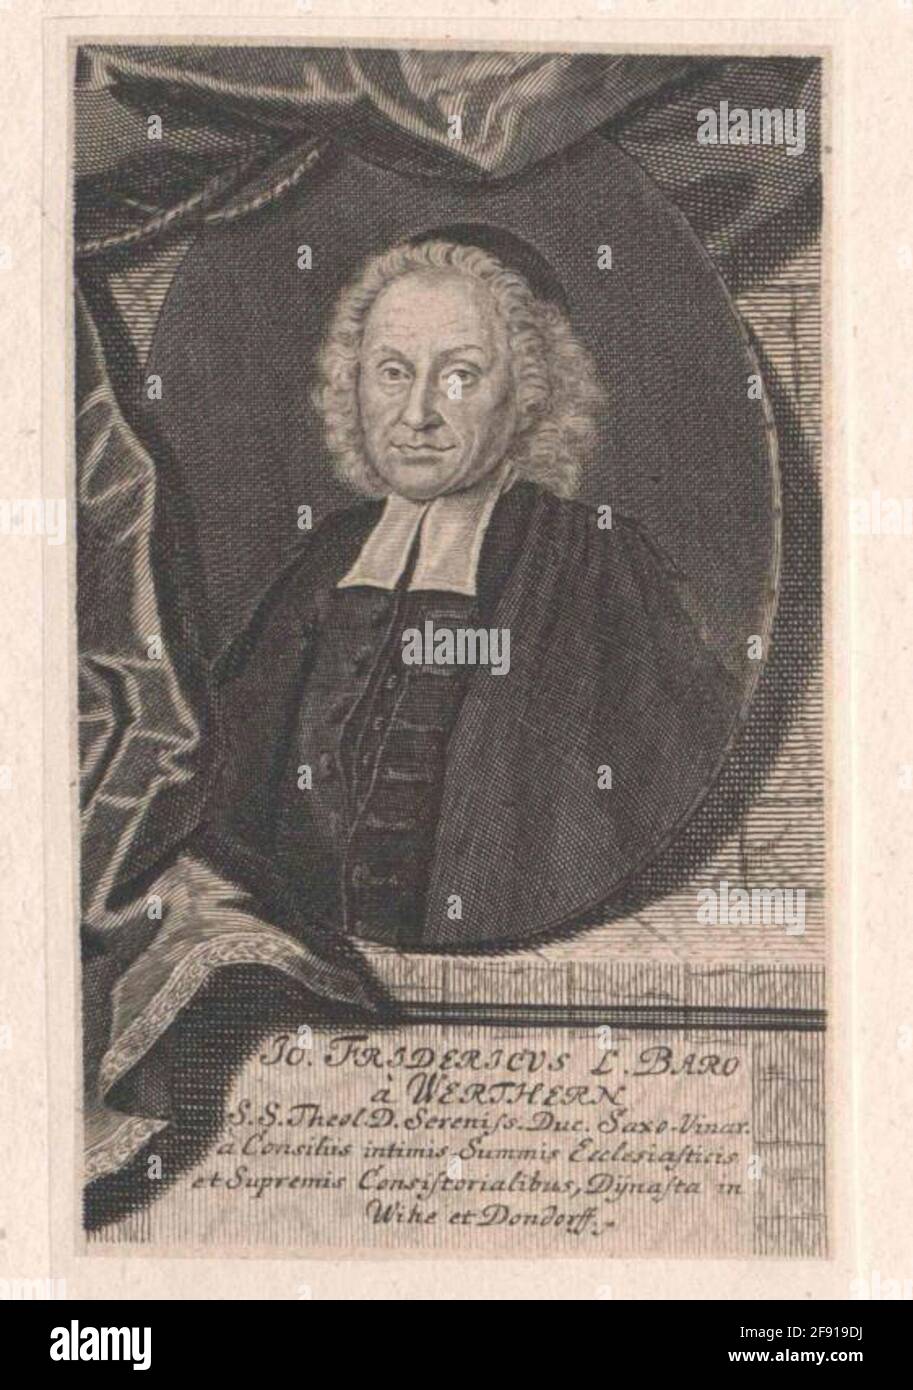 Werthern, Johann Friedrich Freiherr von. Stock Photo